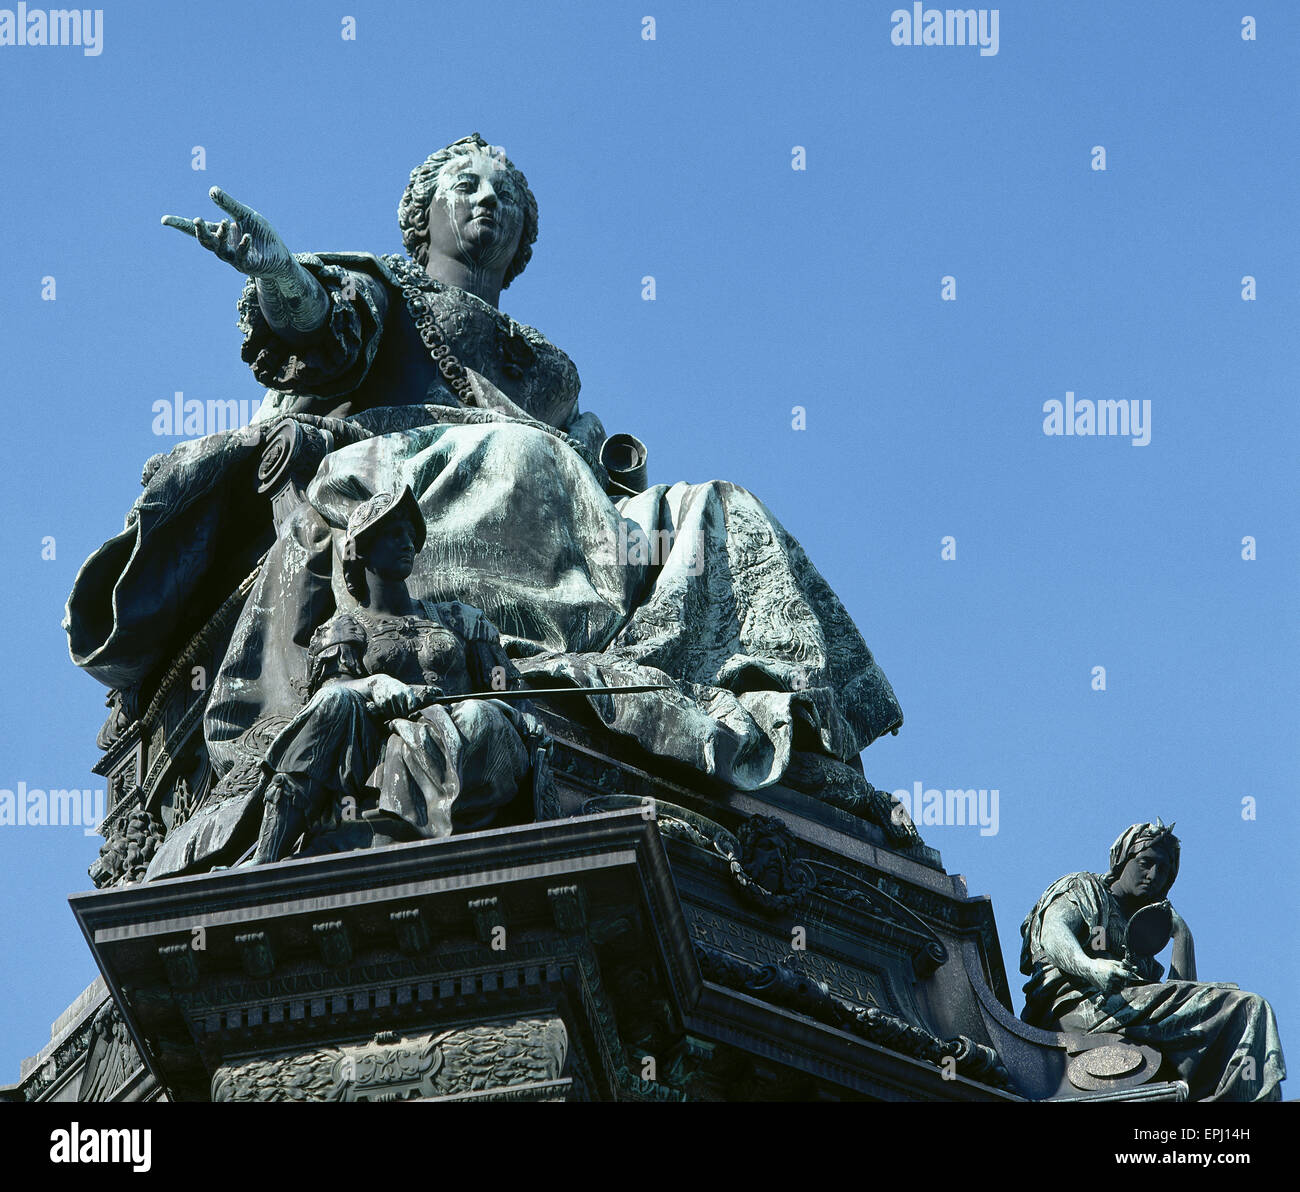 Marie-thérèse (1717-1780). L'Impératrice du Saint Empire Romain. Statue de la Maria Theresia monument. Par sculpteur allemand Kaspar von Zumbusch, 1888. Vienne. L'Autriche. Banque D'Images